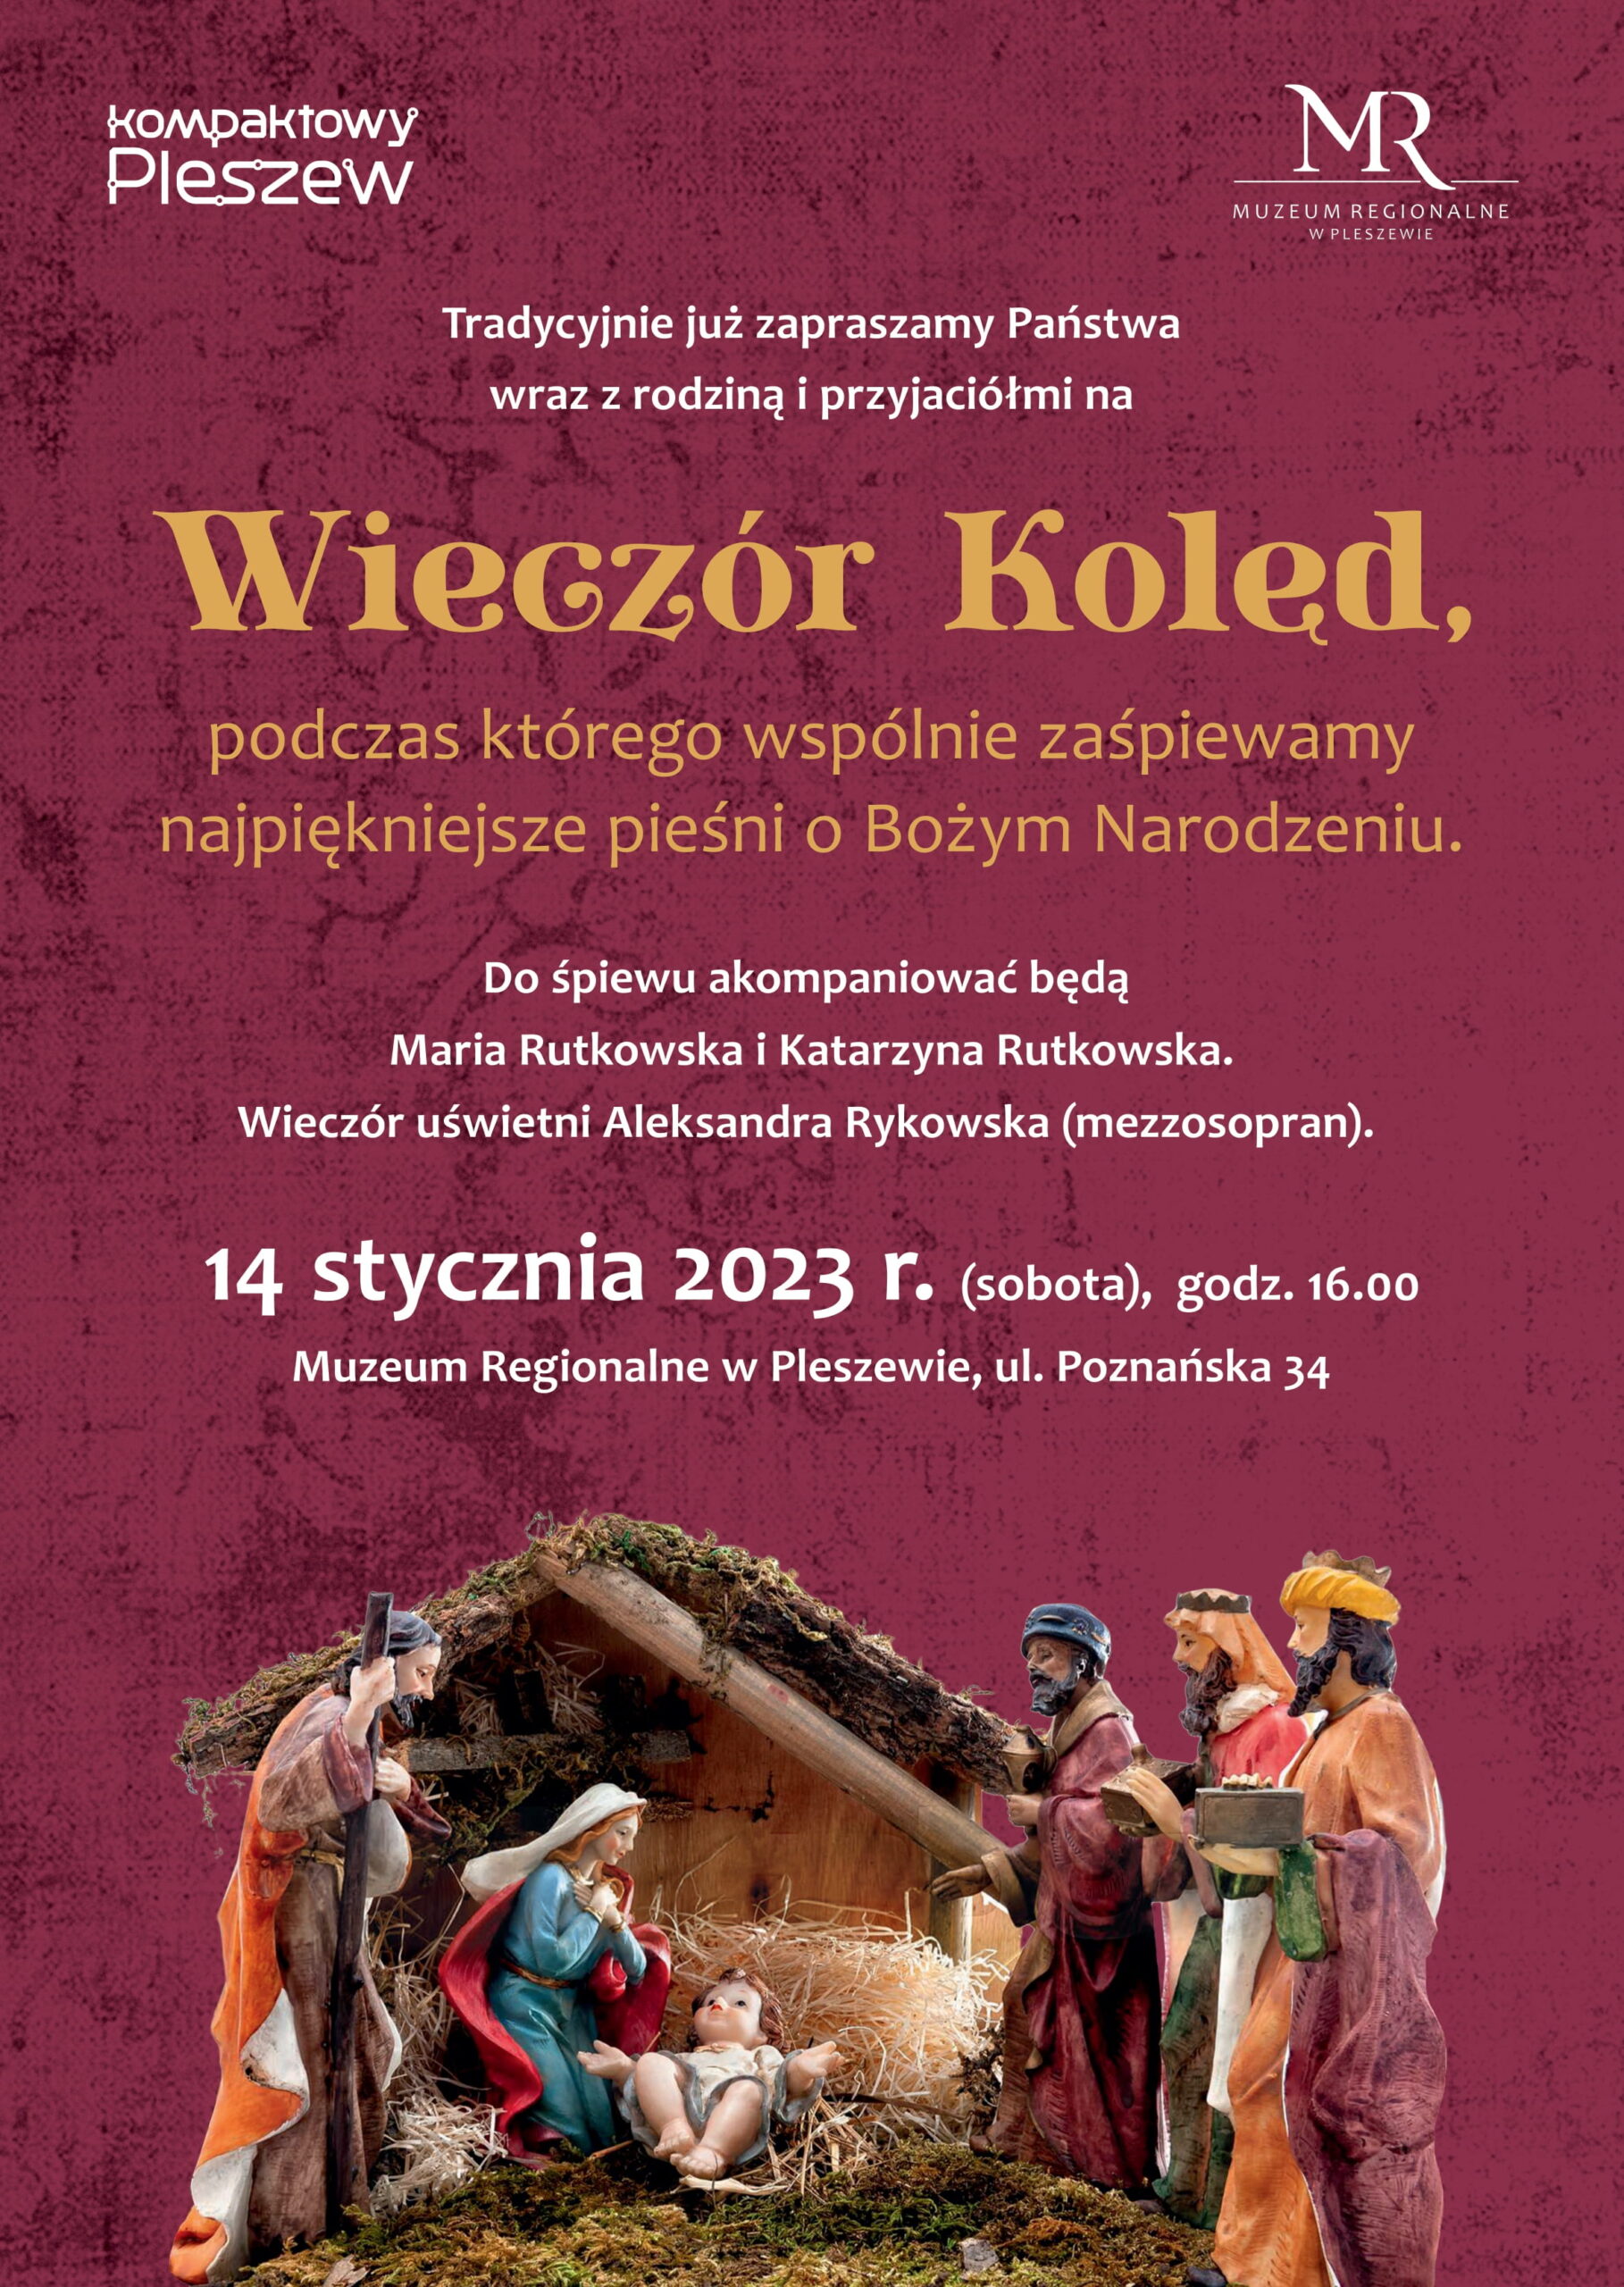 Plakat Wieczoru Kolęd organizowanego w Muzeum Regionalnym w Pleszewie 14 stycznia 2023 roku o godzinie 16:00